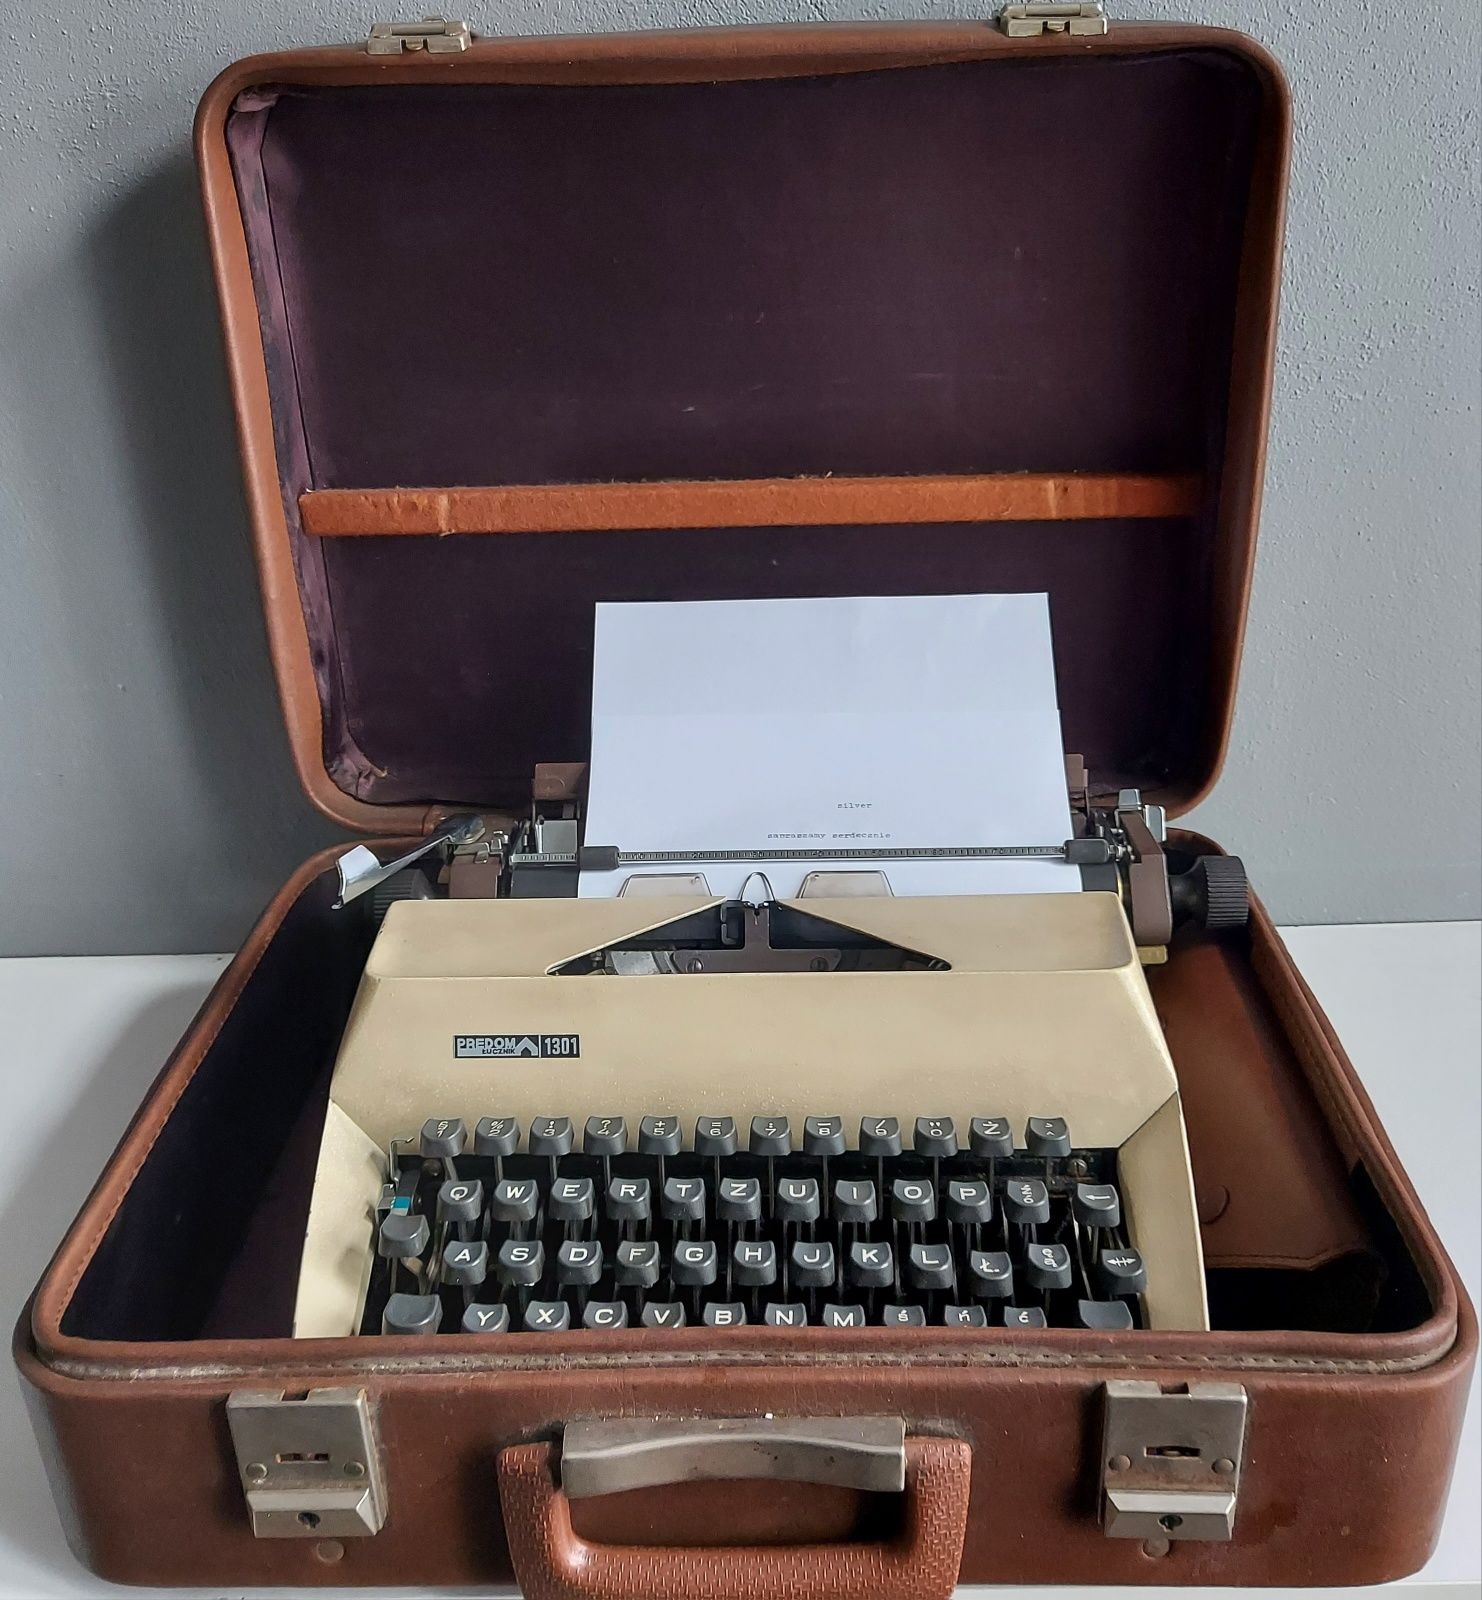 Stara maszyna do pisania PREDOM 1301 Łucznik walizka